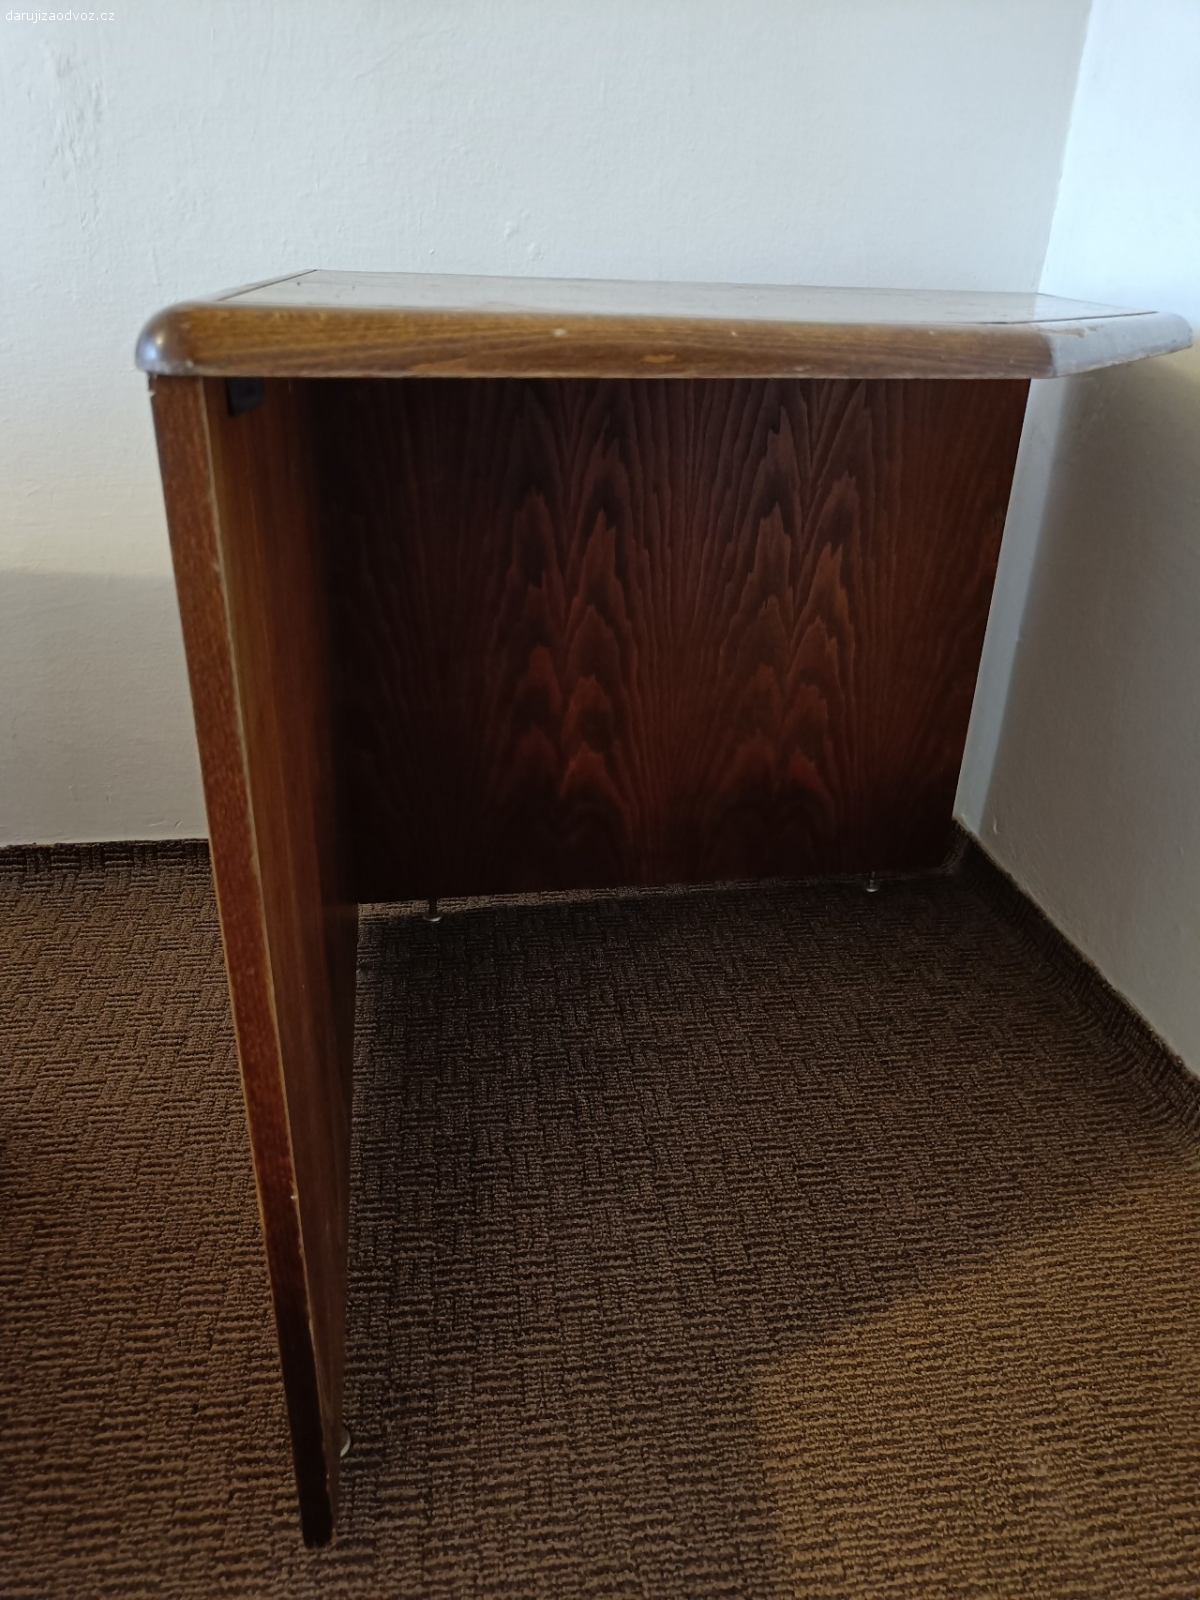 Rohový stůl. Starší dřevěný rohový stůl. Dýha.

rozměry: 80x80cm, výška 73cm